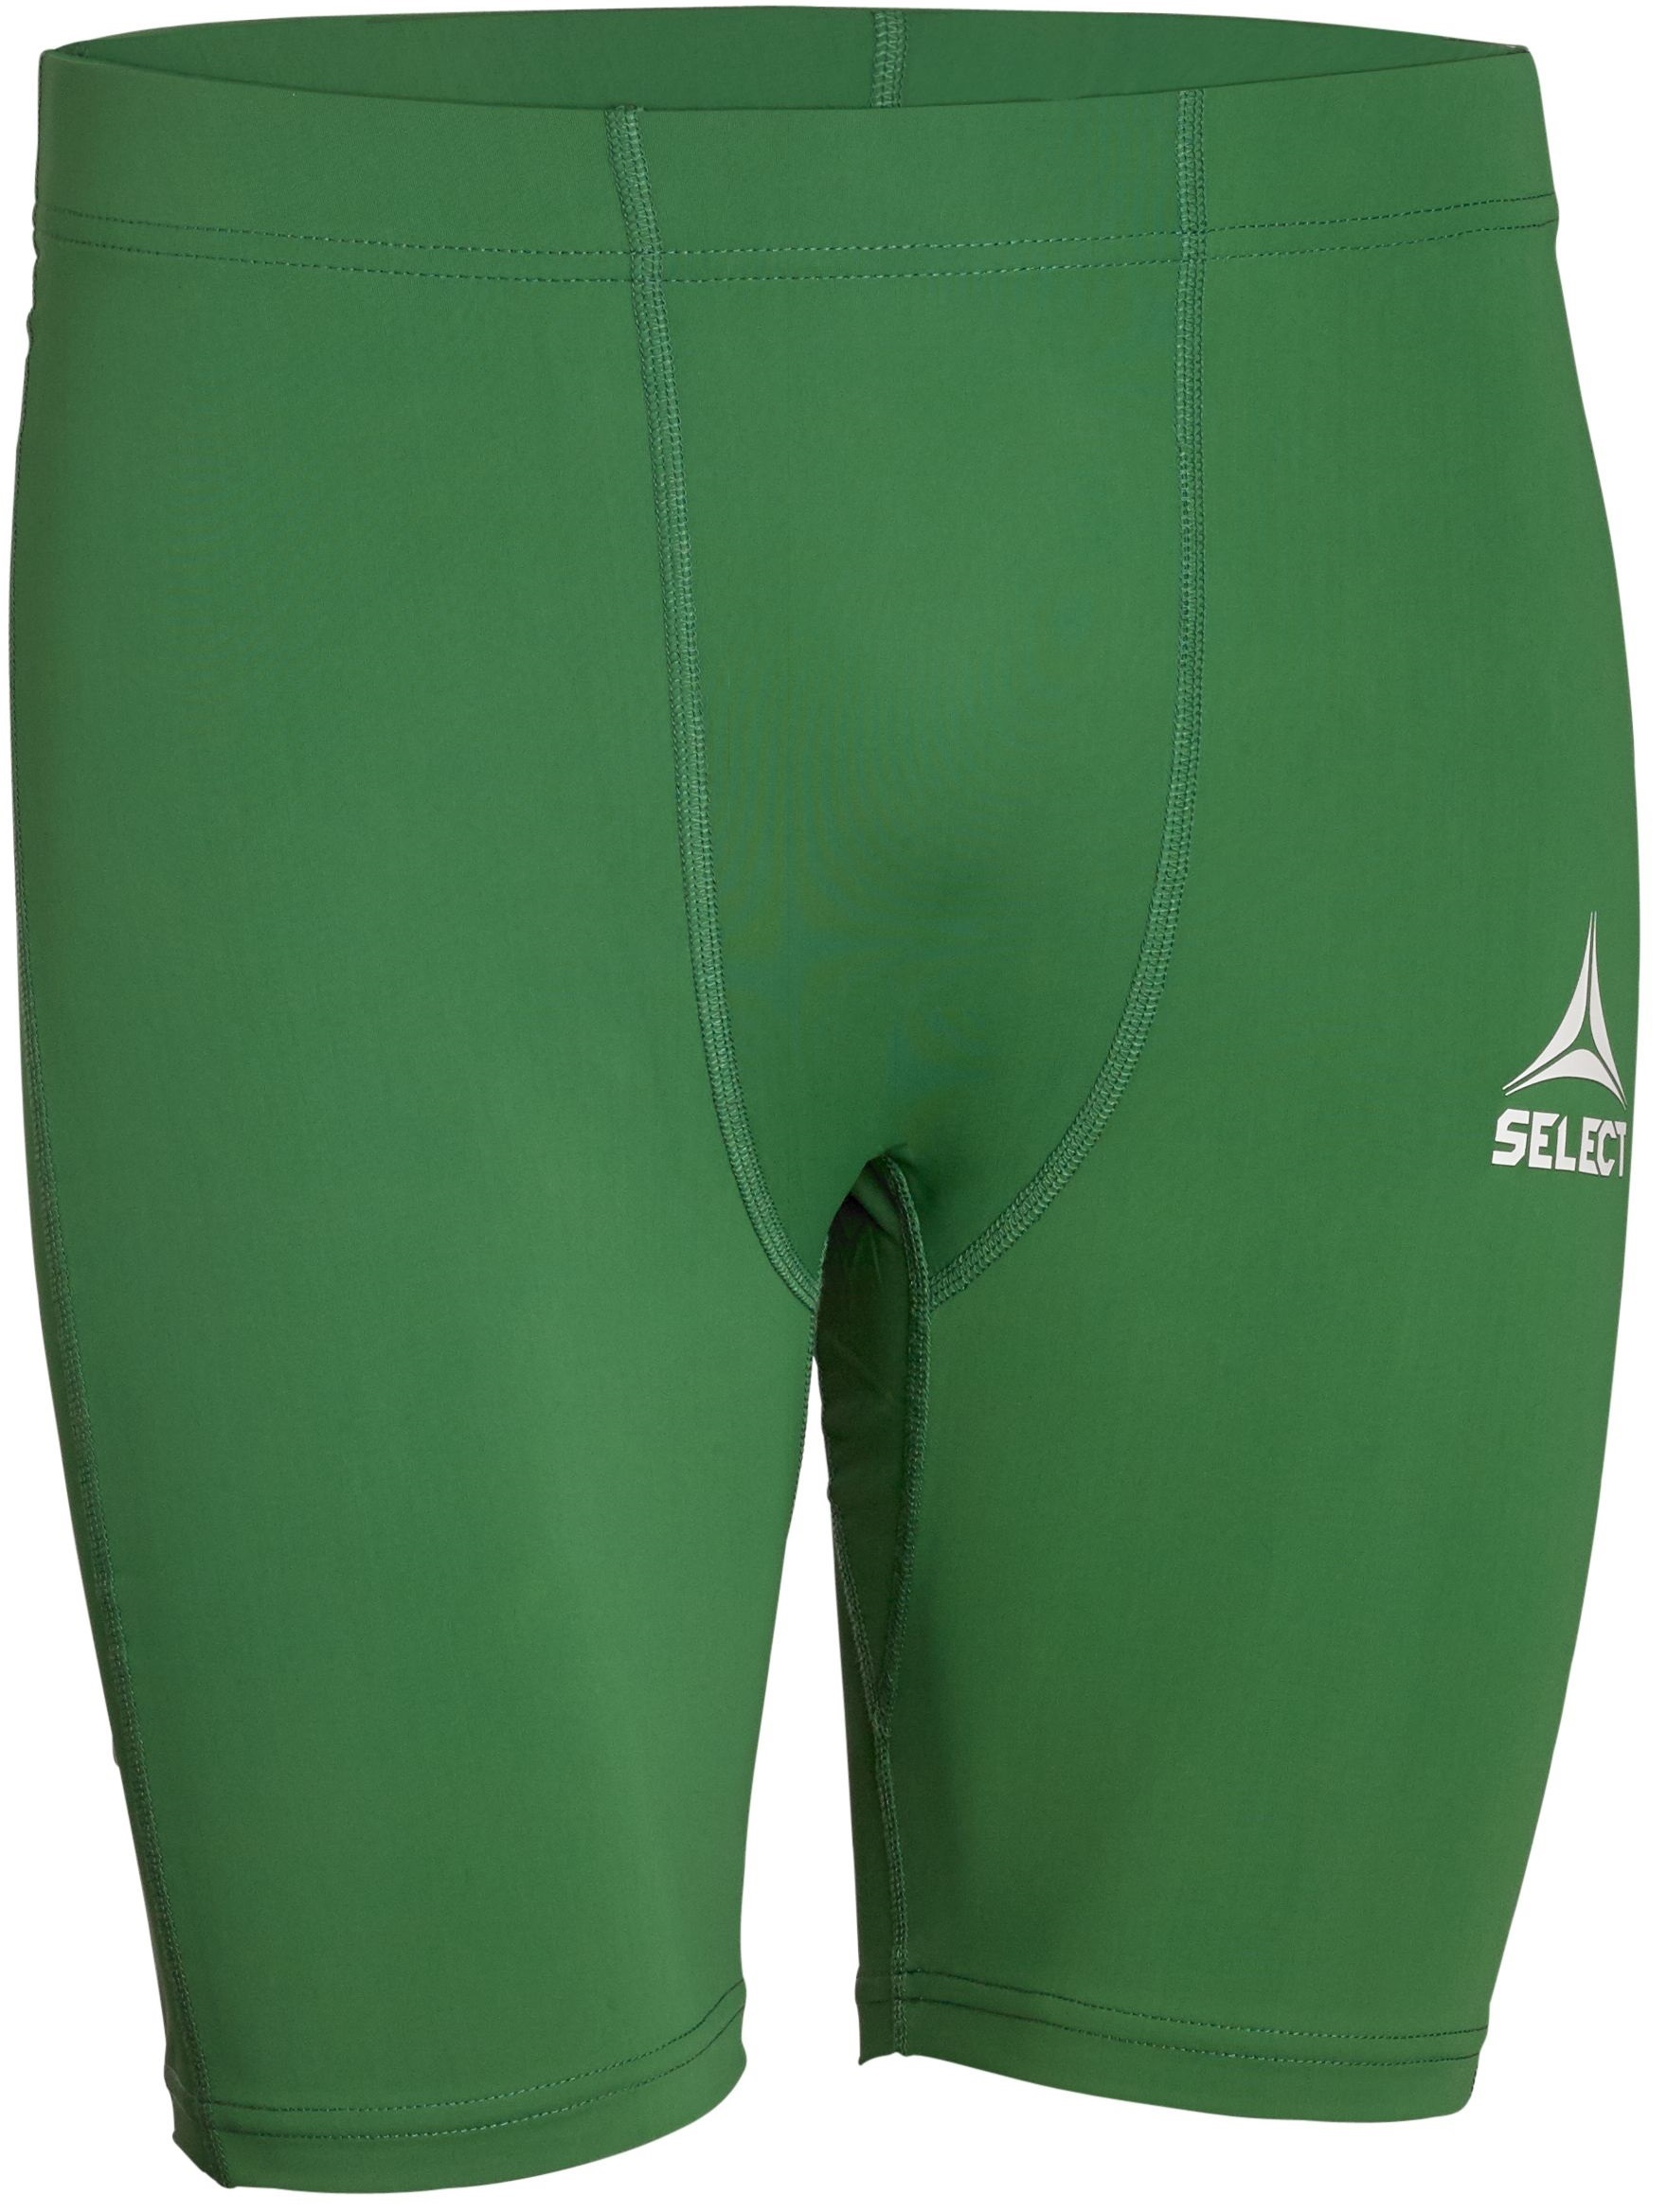 Pantalón Compresión Select Baselayer - verde - 